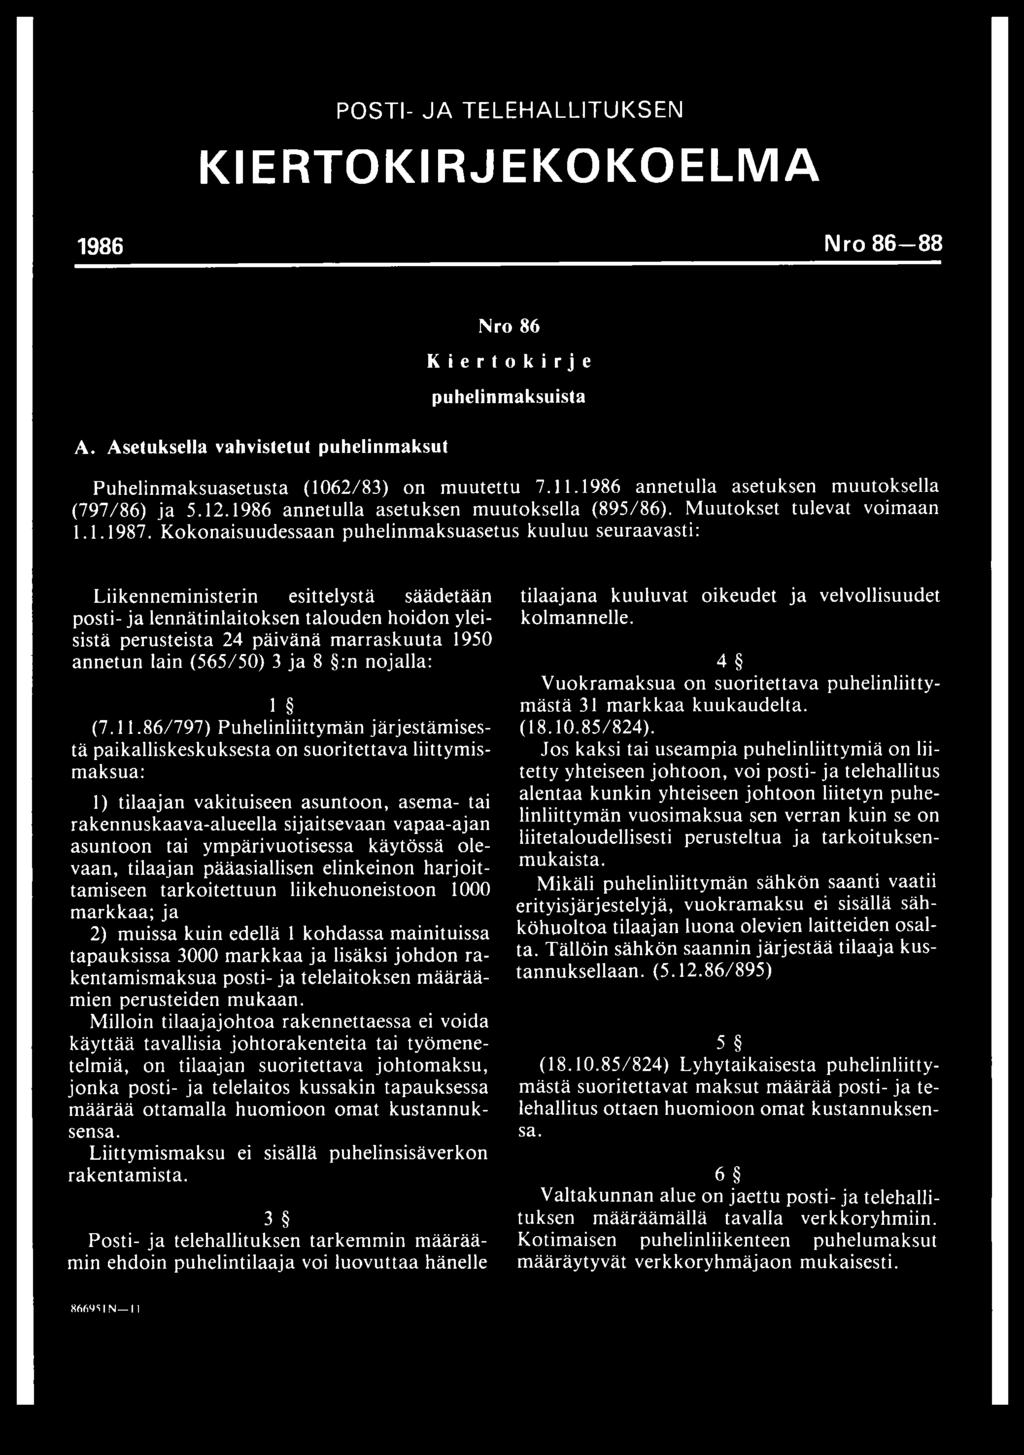 Kokonaisuudessaan puhelinmaksuasetus kuuluu seuraavasti: Liikenneministerin esittelystä säädetään posti- ja lennätinlaitoksen talouden hoidon yleisistä perusteista 24 päivänä marraskuuta 1950 annetun